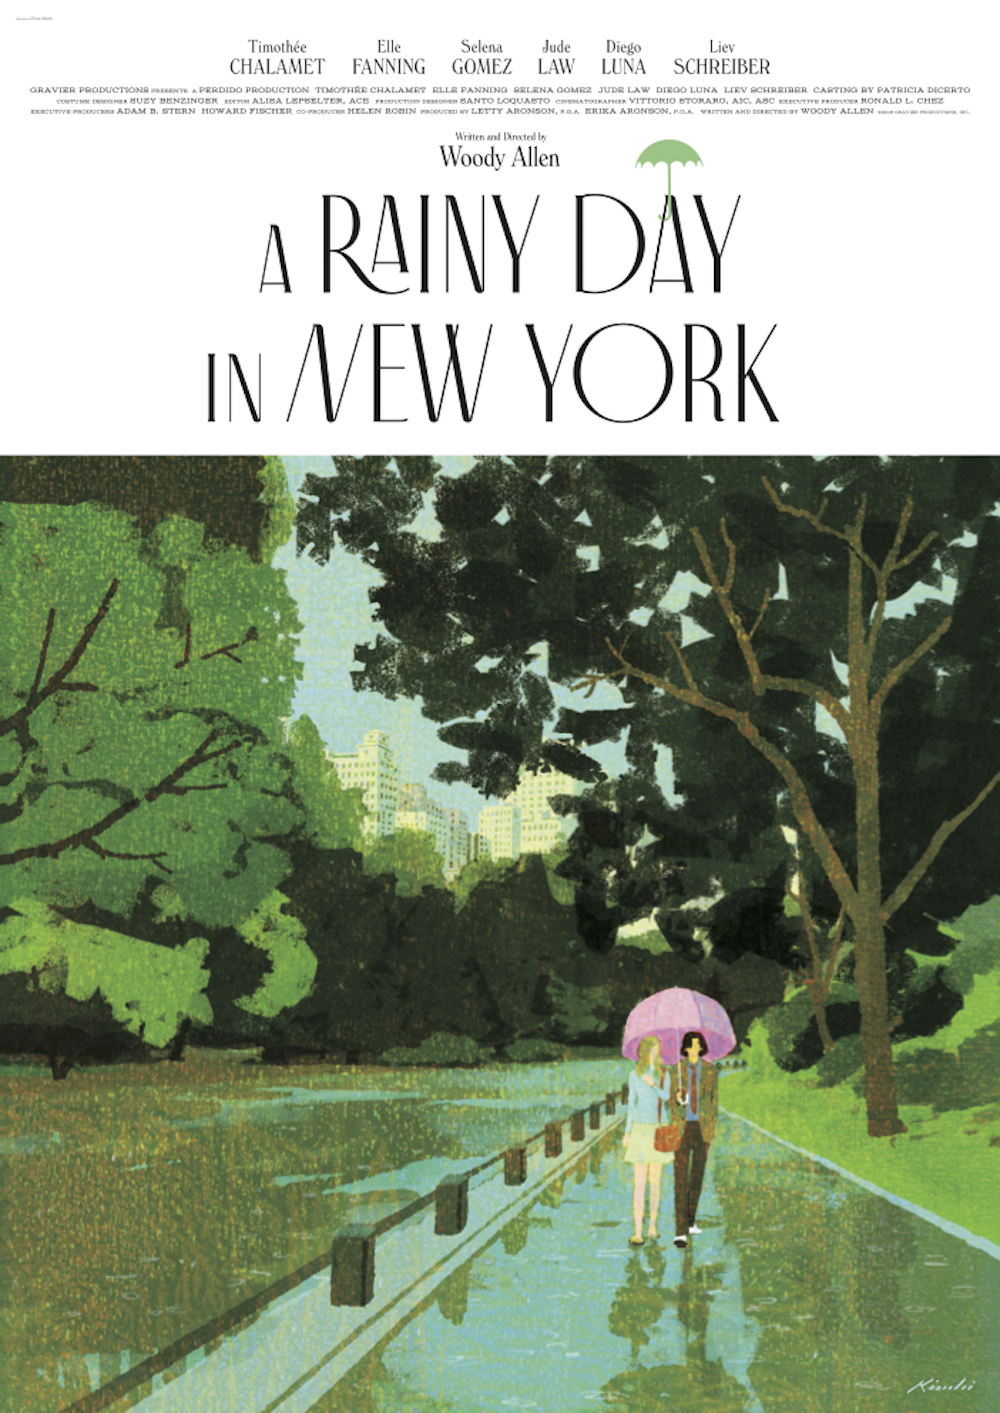 『レイニーデイ・イン・ニューヨーク』木内達朗描き下ろし、大島依提亜デザインのイラストポスター2種